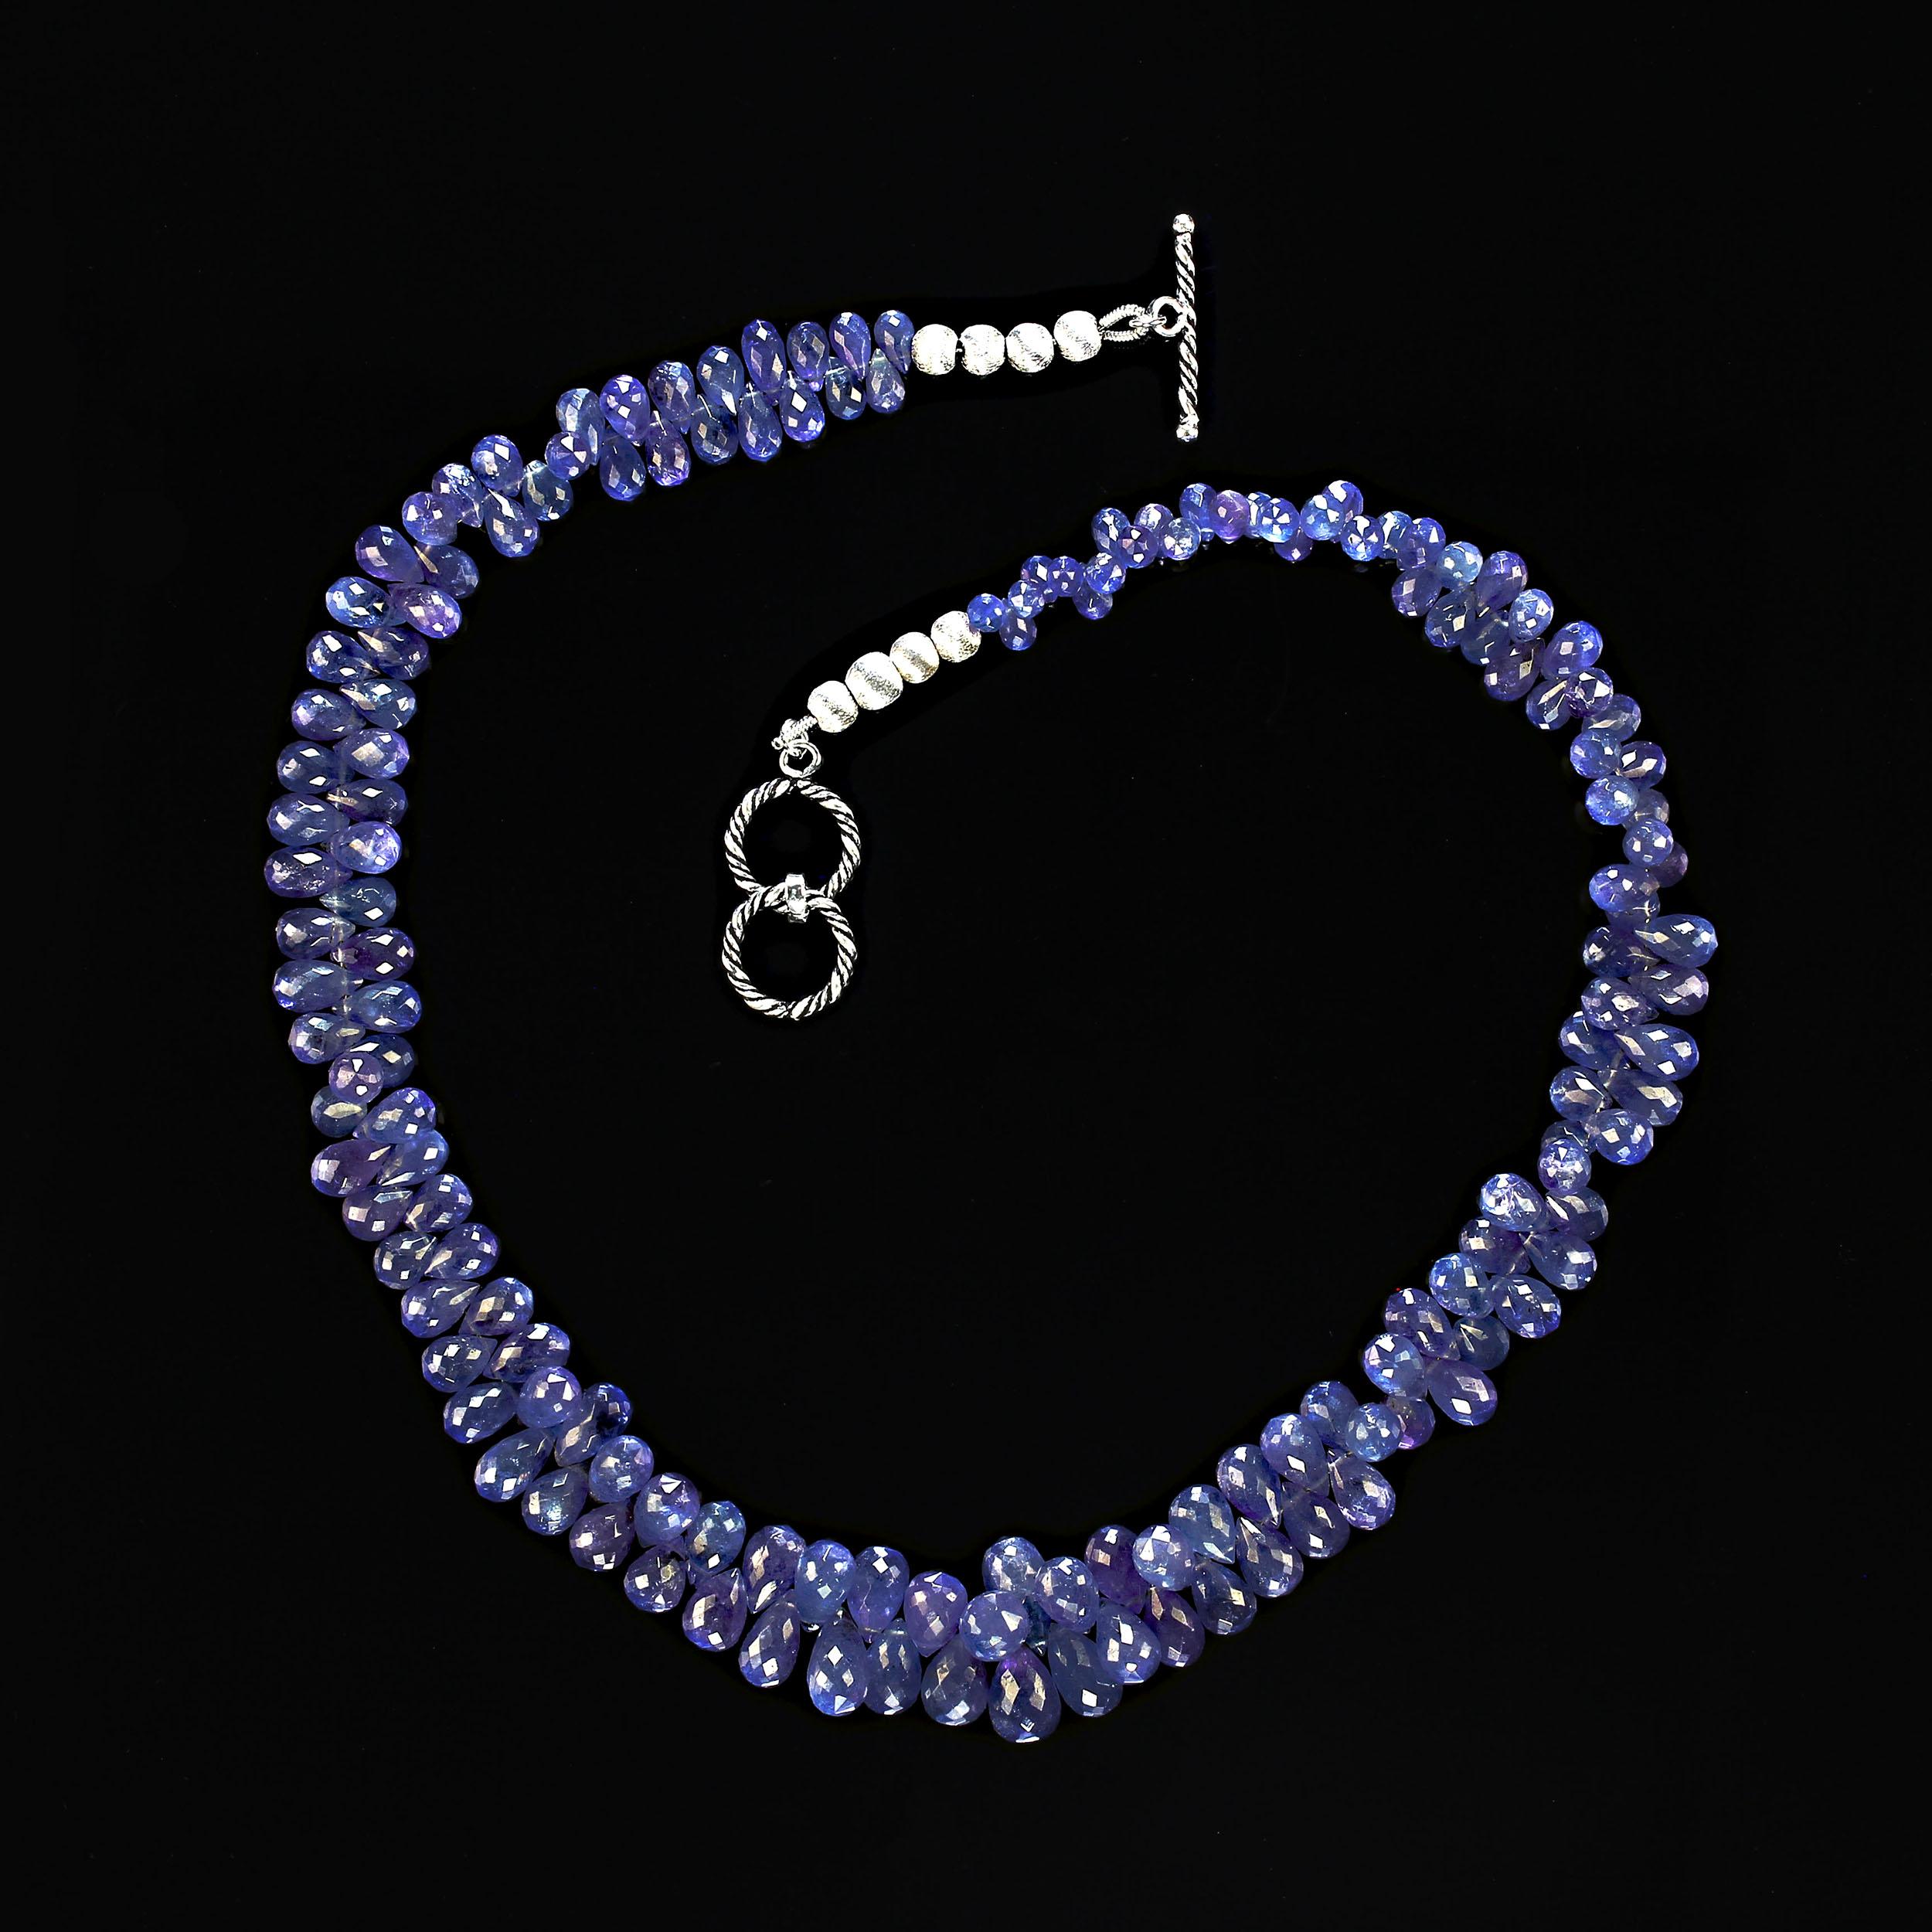 Abgestufte Tansanit-Halskette, AJD 19 Zoll, durchscheinende blau-lila Briolettes, Tansanit (Kunsthandwerker*in) im Angebot